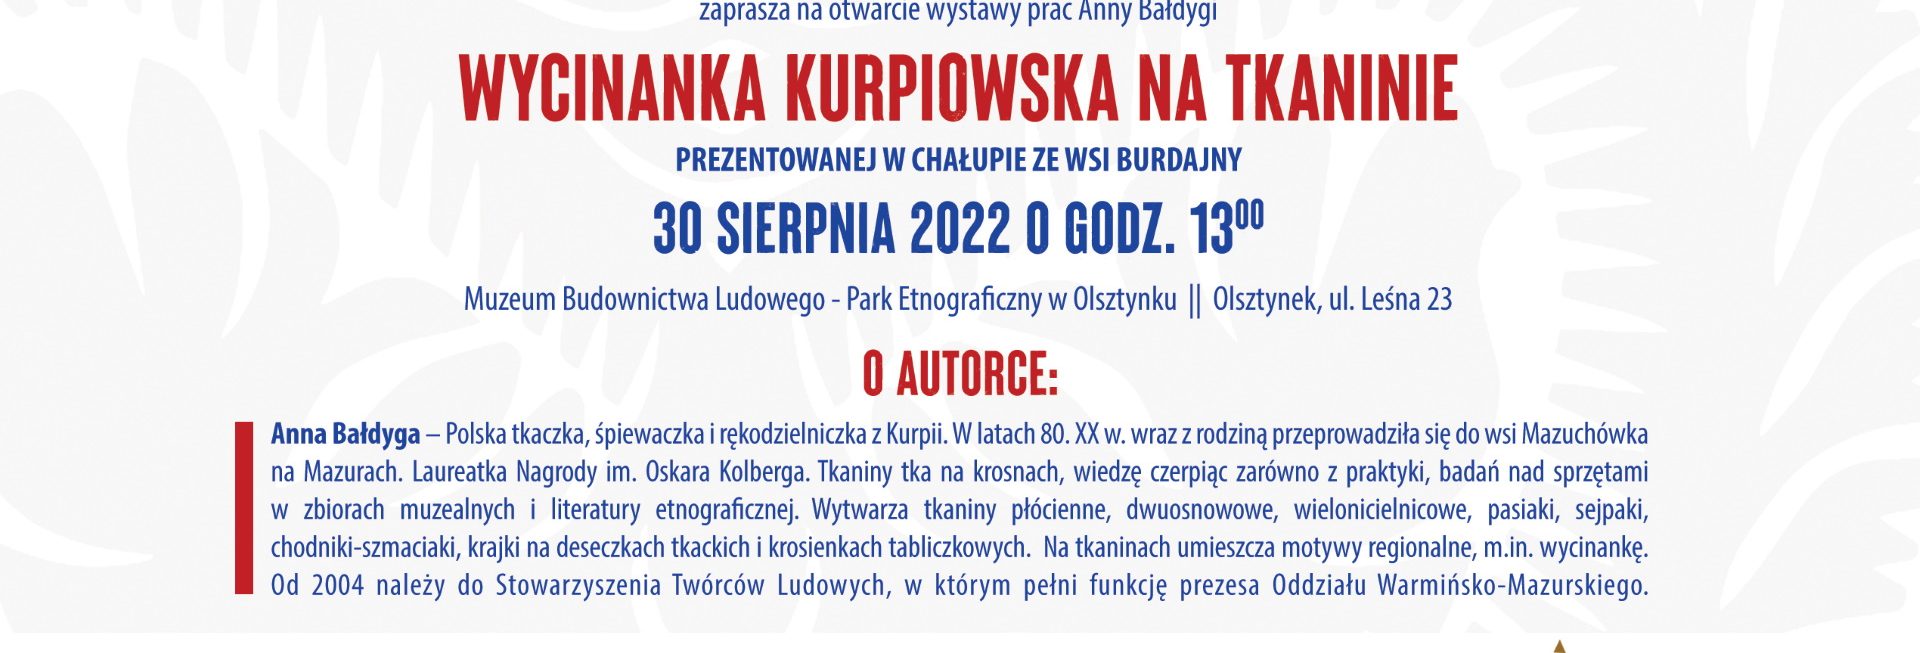 Plakat zapraszający do Muzeum Budownictwa Ludowego w Olsztynku na otwarcie wystawy pt. „Wycinanka Kurpiowska na tkaninie”. 